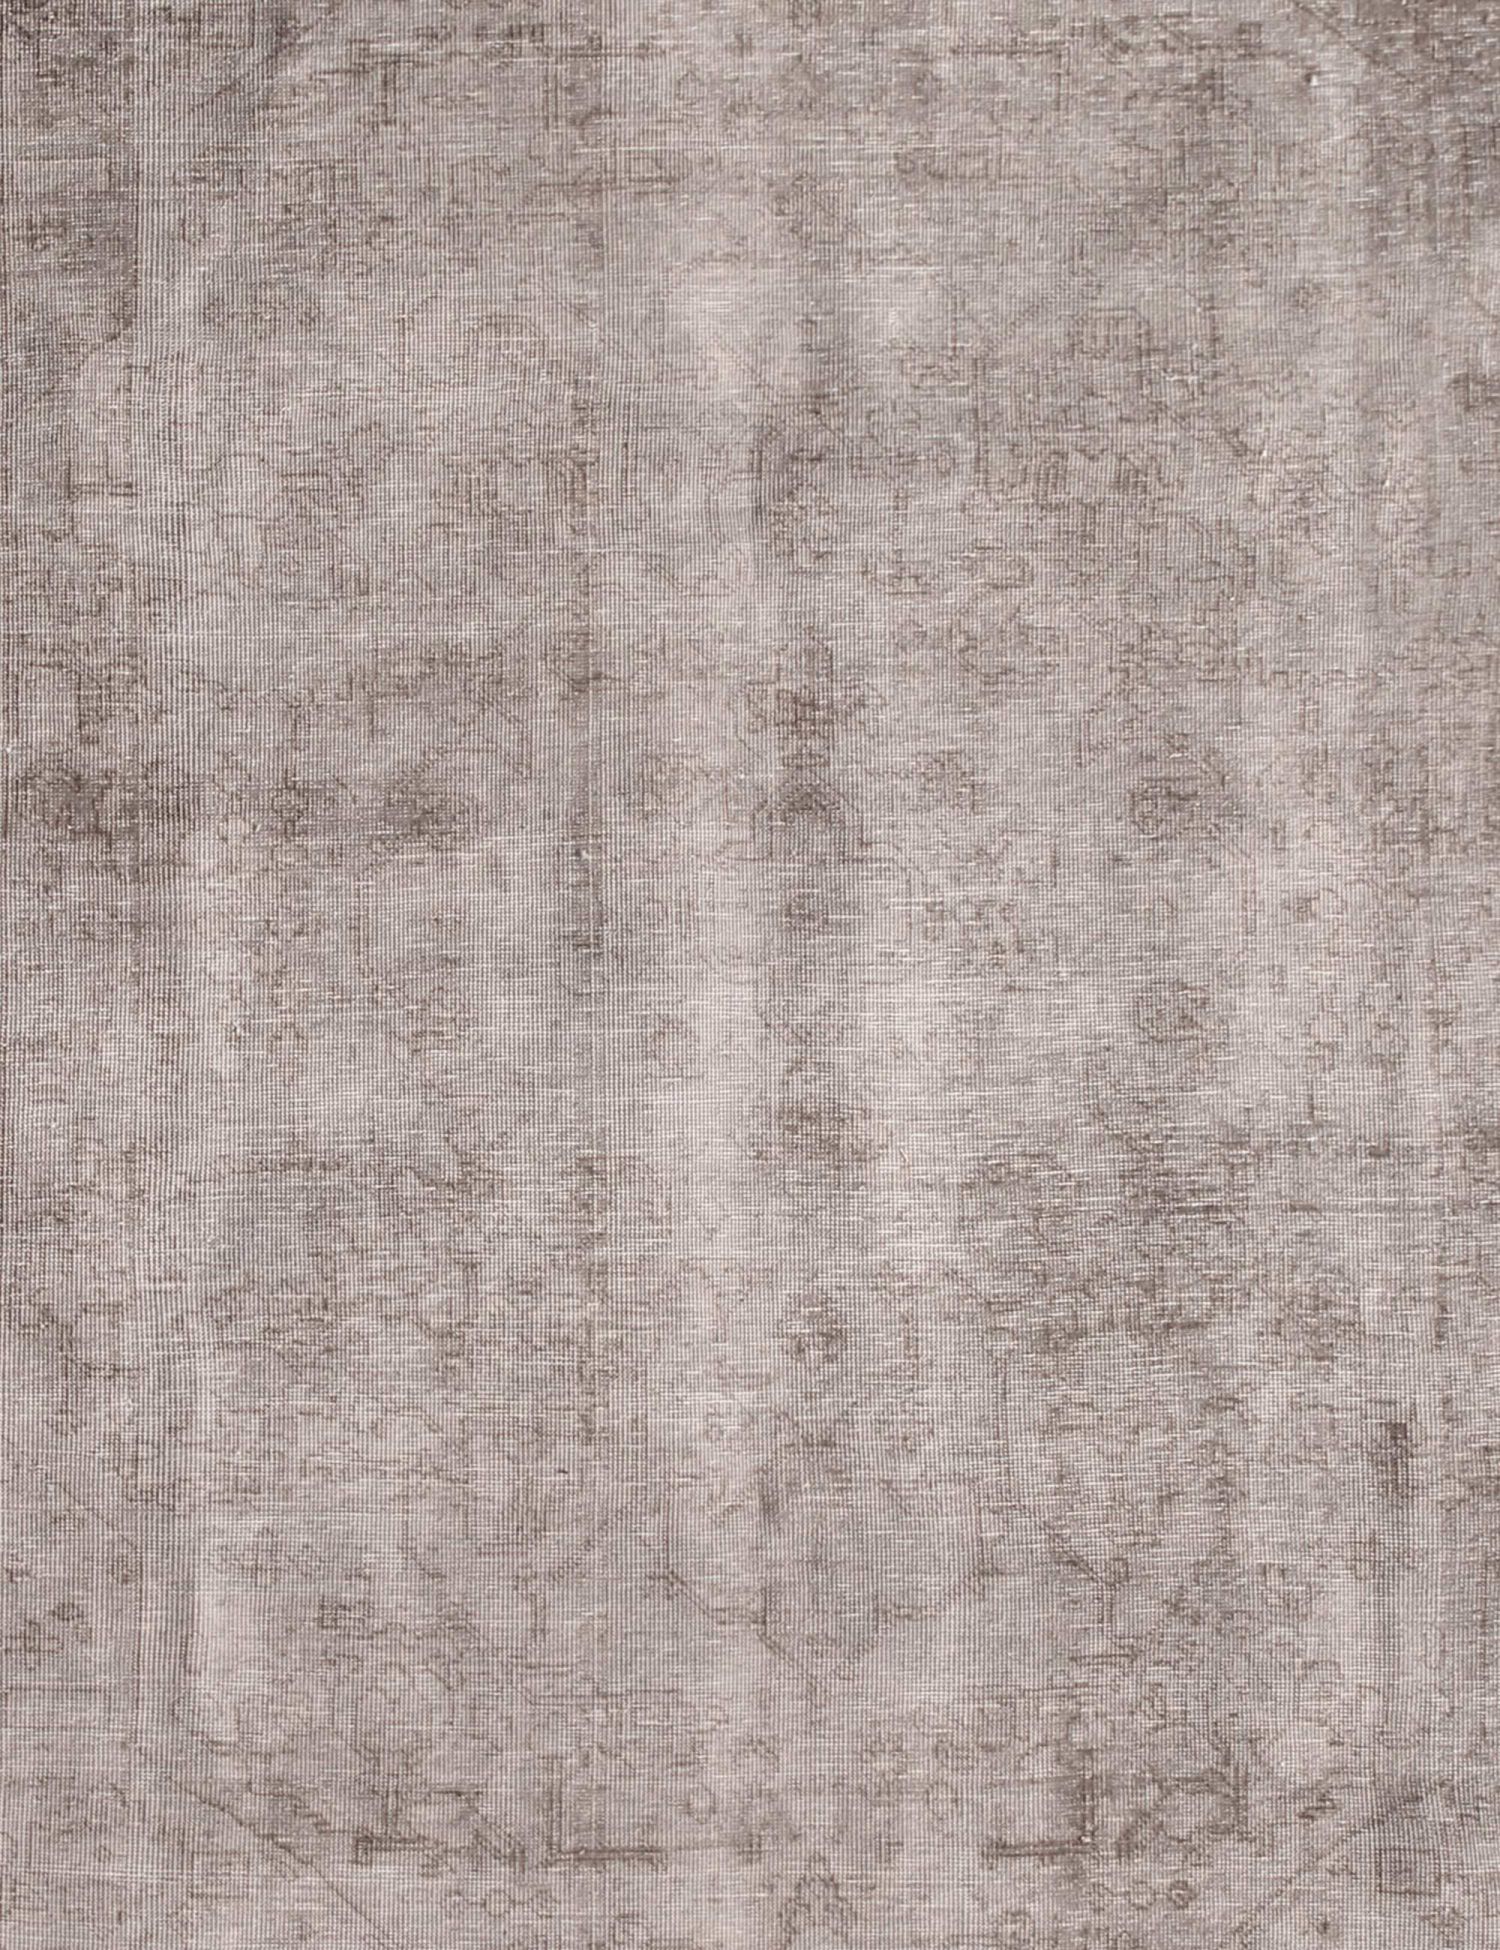 Persischer Vintage Teppich  grau <br/>281 x 202 cm